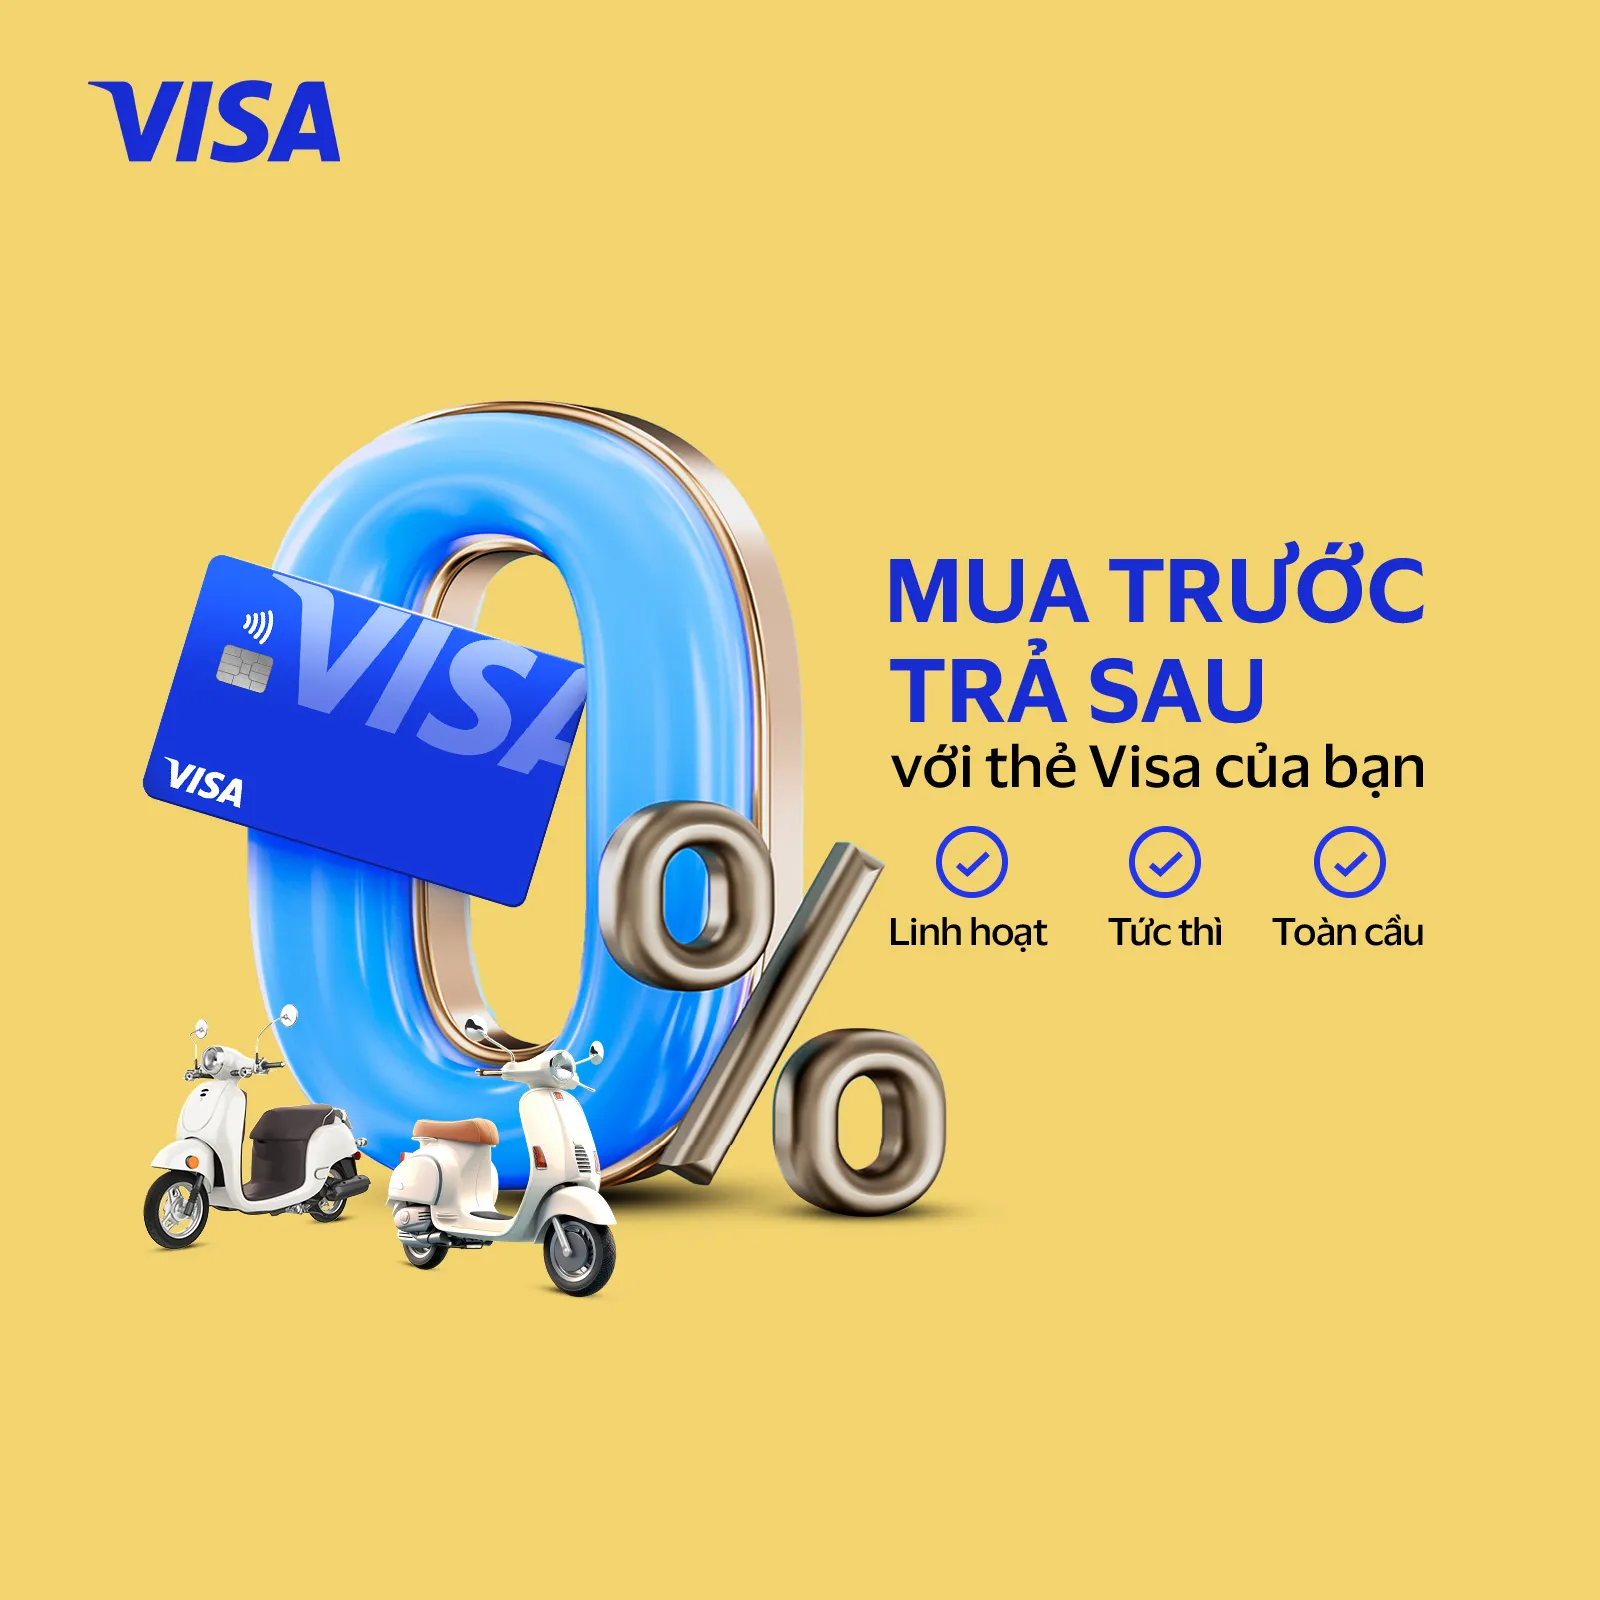 Visa phát triển tài chính toàn diện tại Việt Nam với Giải pháp Trả góp